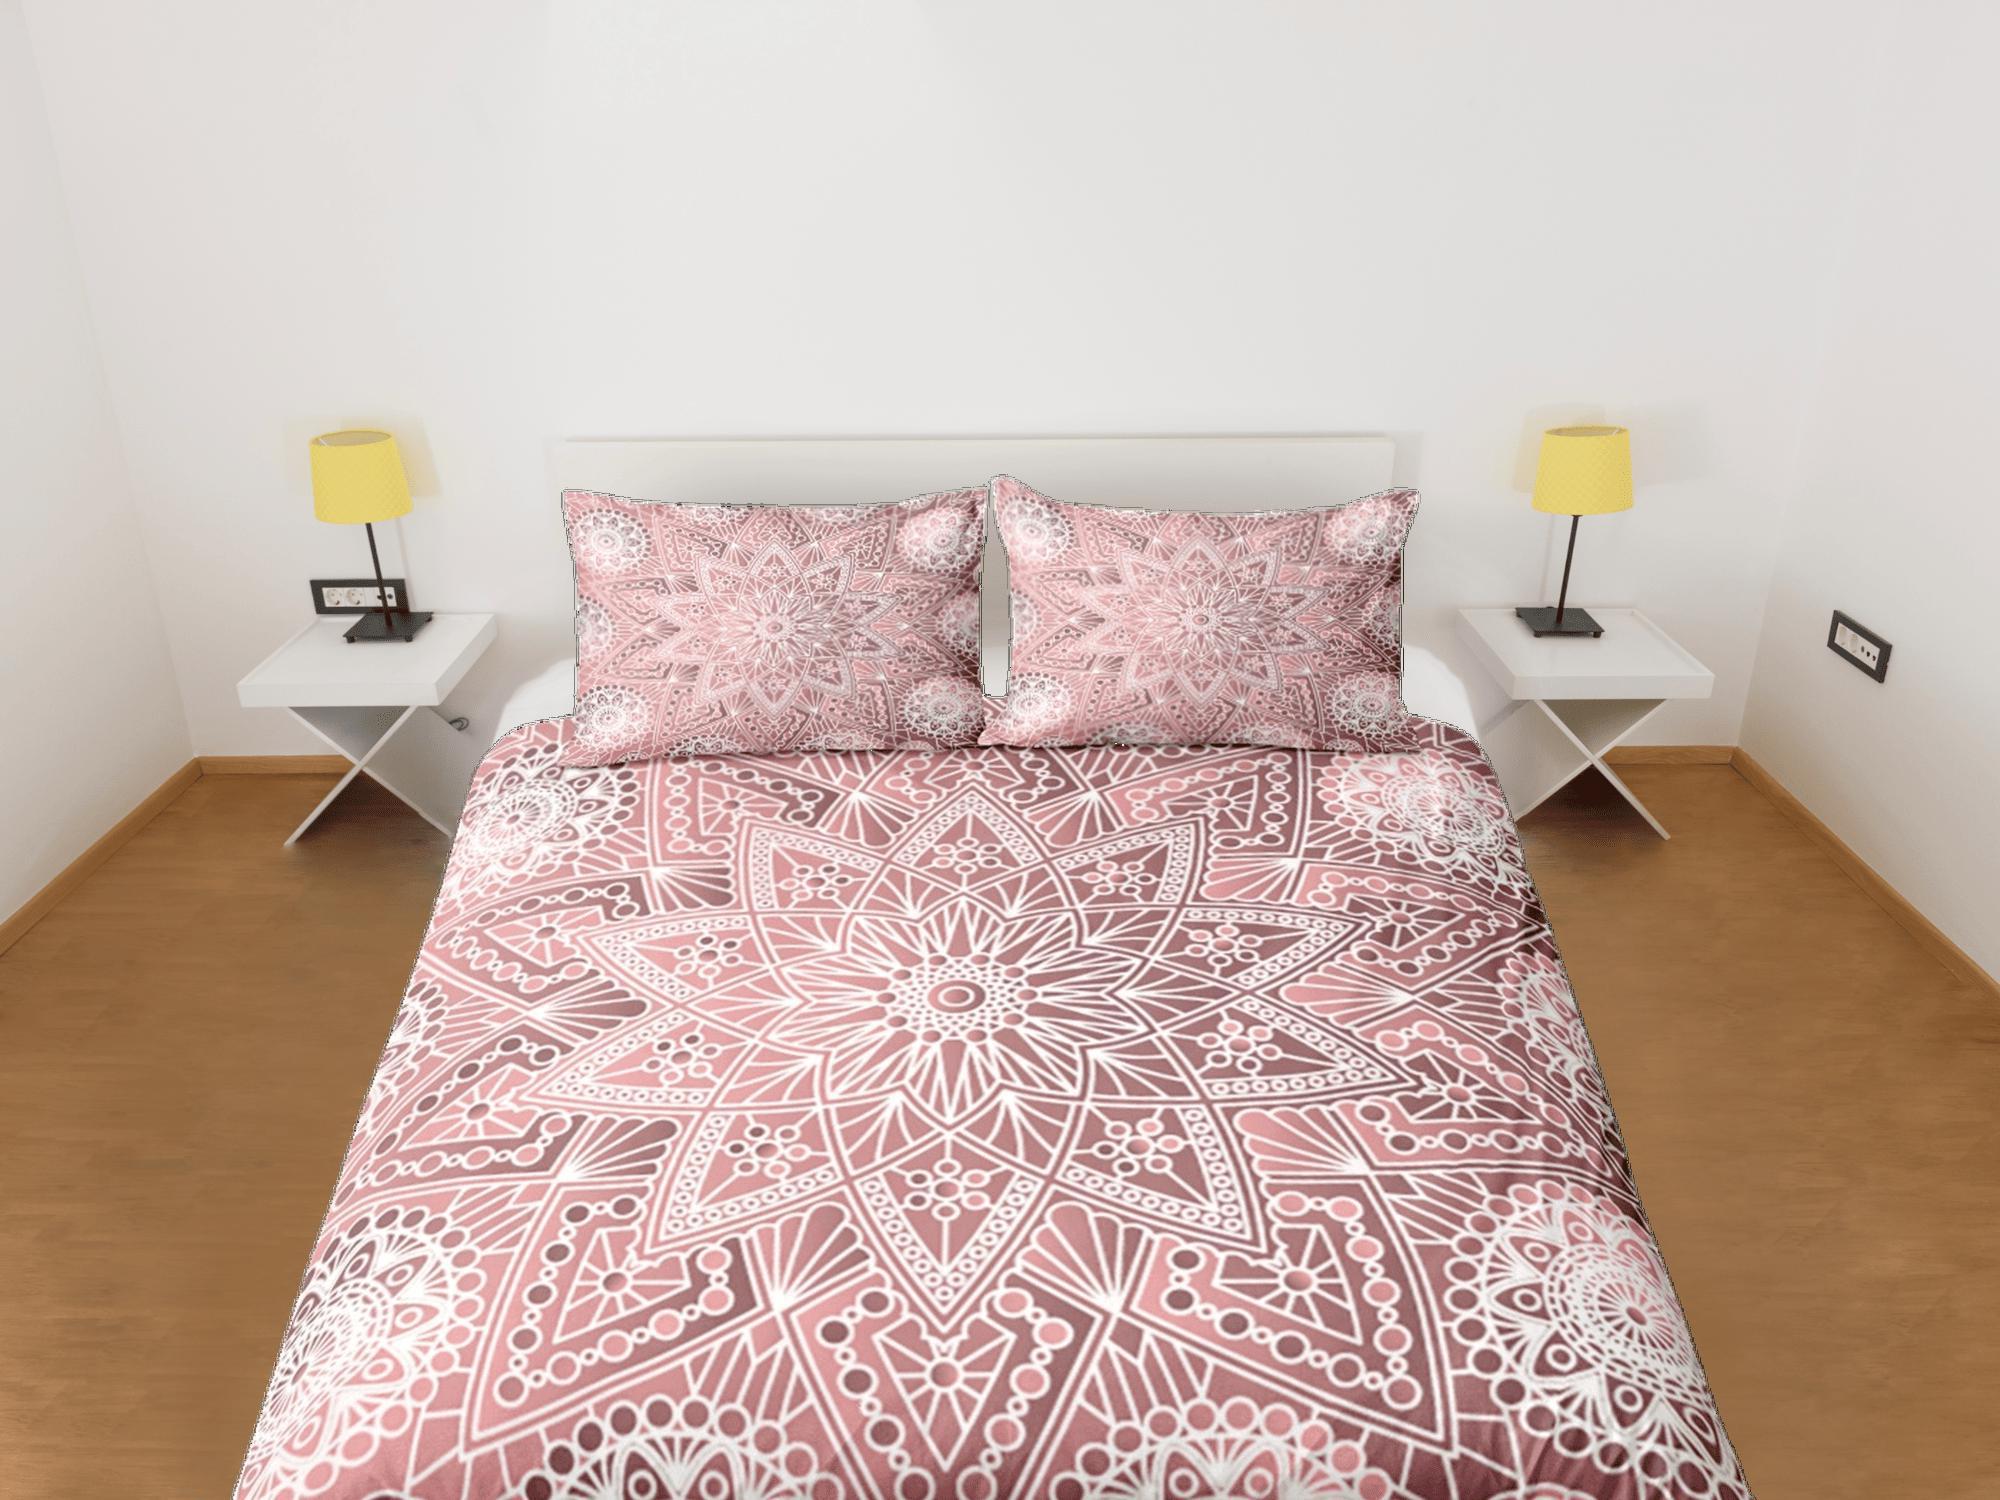 daintyduvet Pink Mandala Duvet Cover Set Boho Bedding Hippie Dorm Bedding Pillowcase, Single Bed